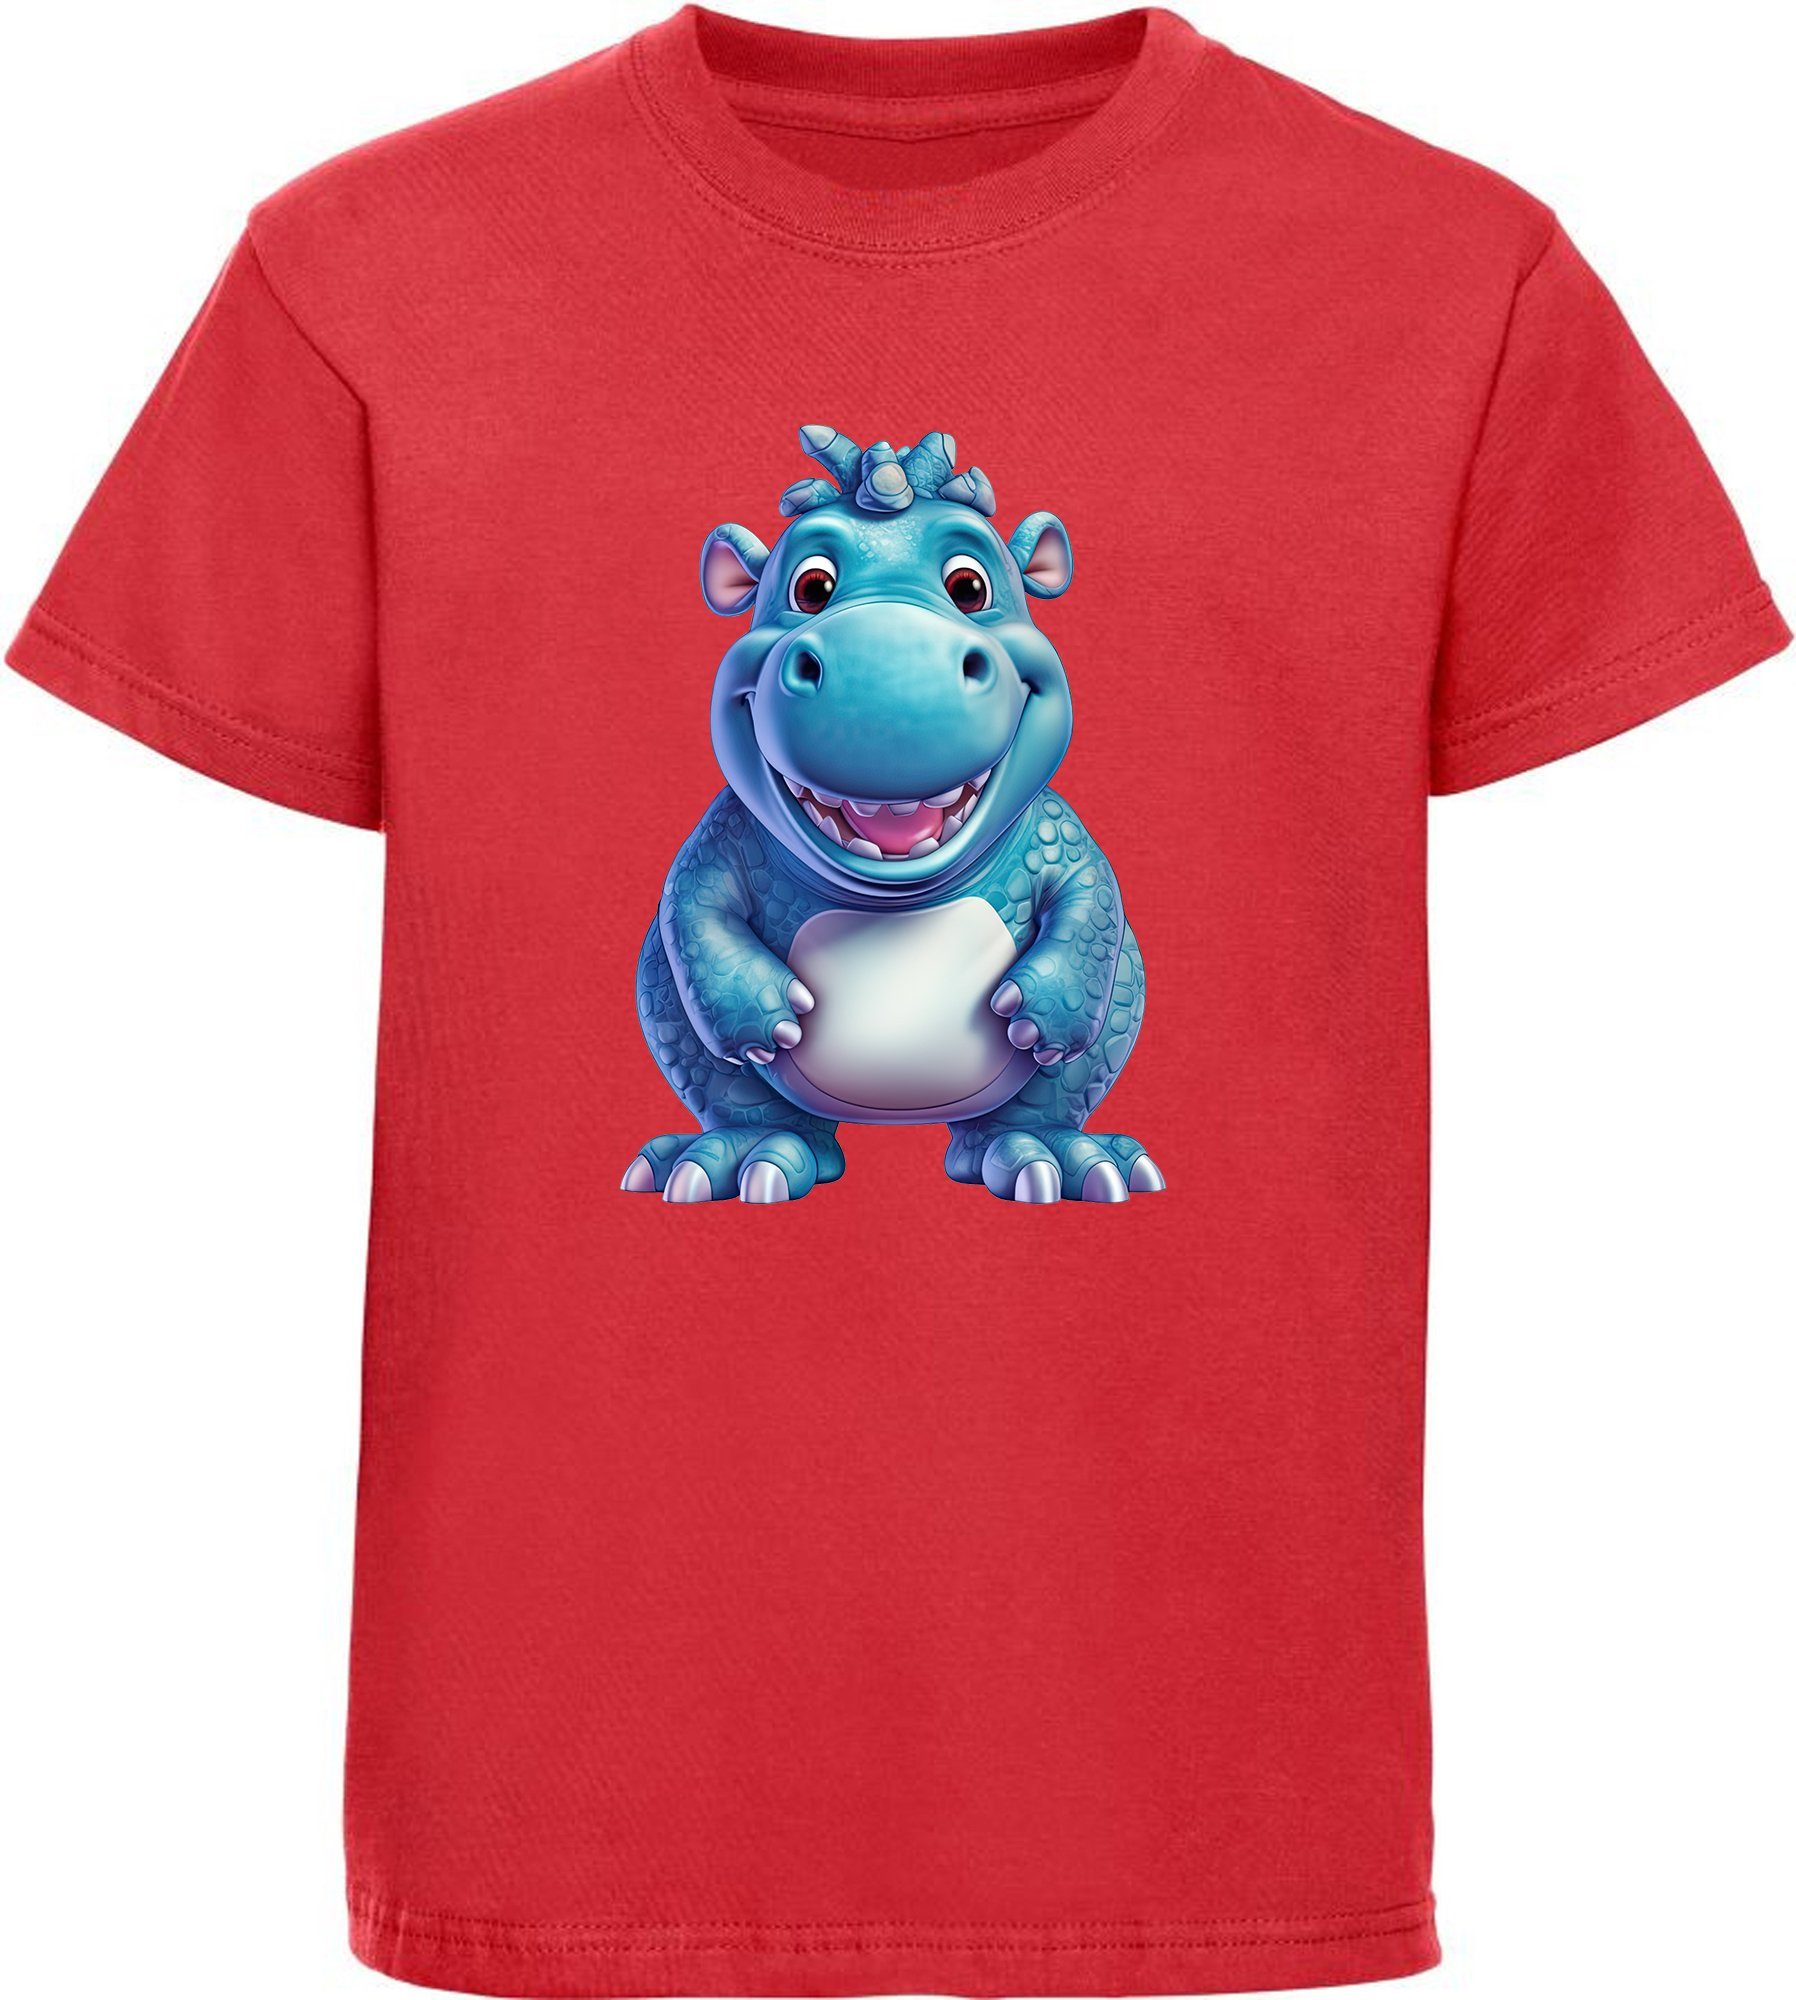 MyDesign24 T-Shirt Kinder Wildtier Print Shirt bedruckt - Baby Hippo Nilpferd Baumwollshirt mit Aufdruck, i274 rot